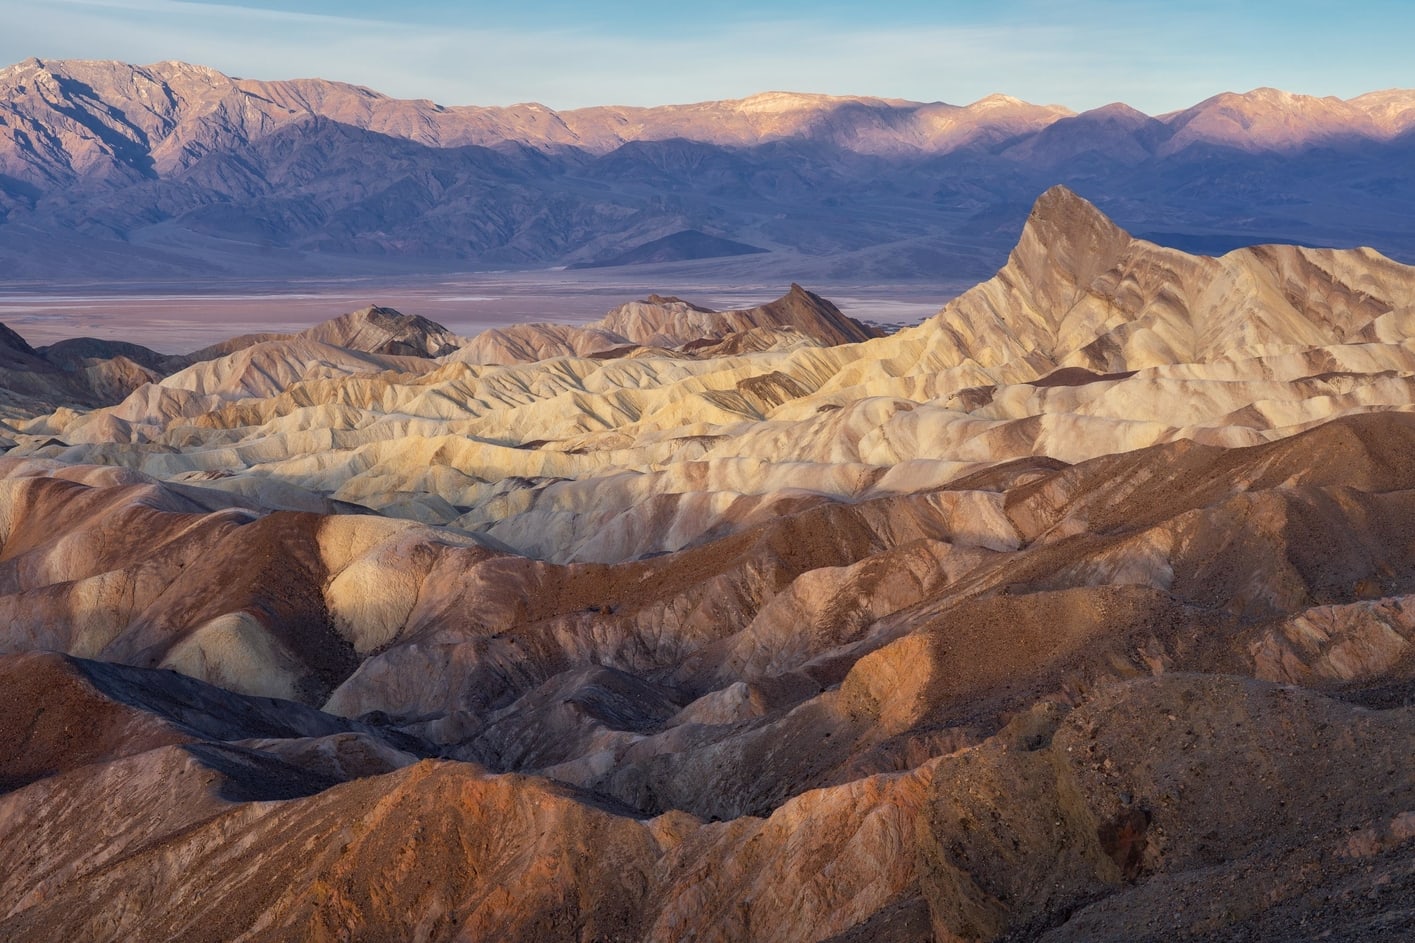 Viaje fotográfico a Death Valley en grupo reducido